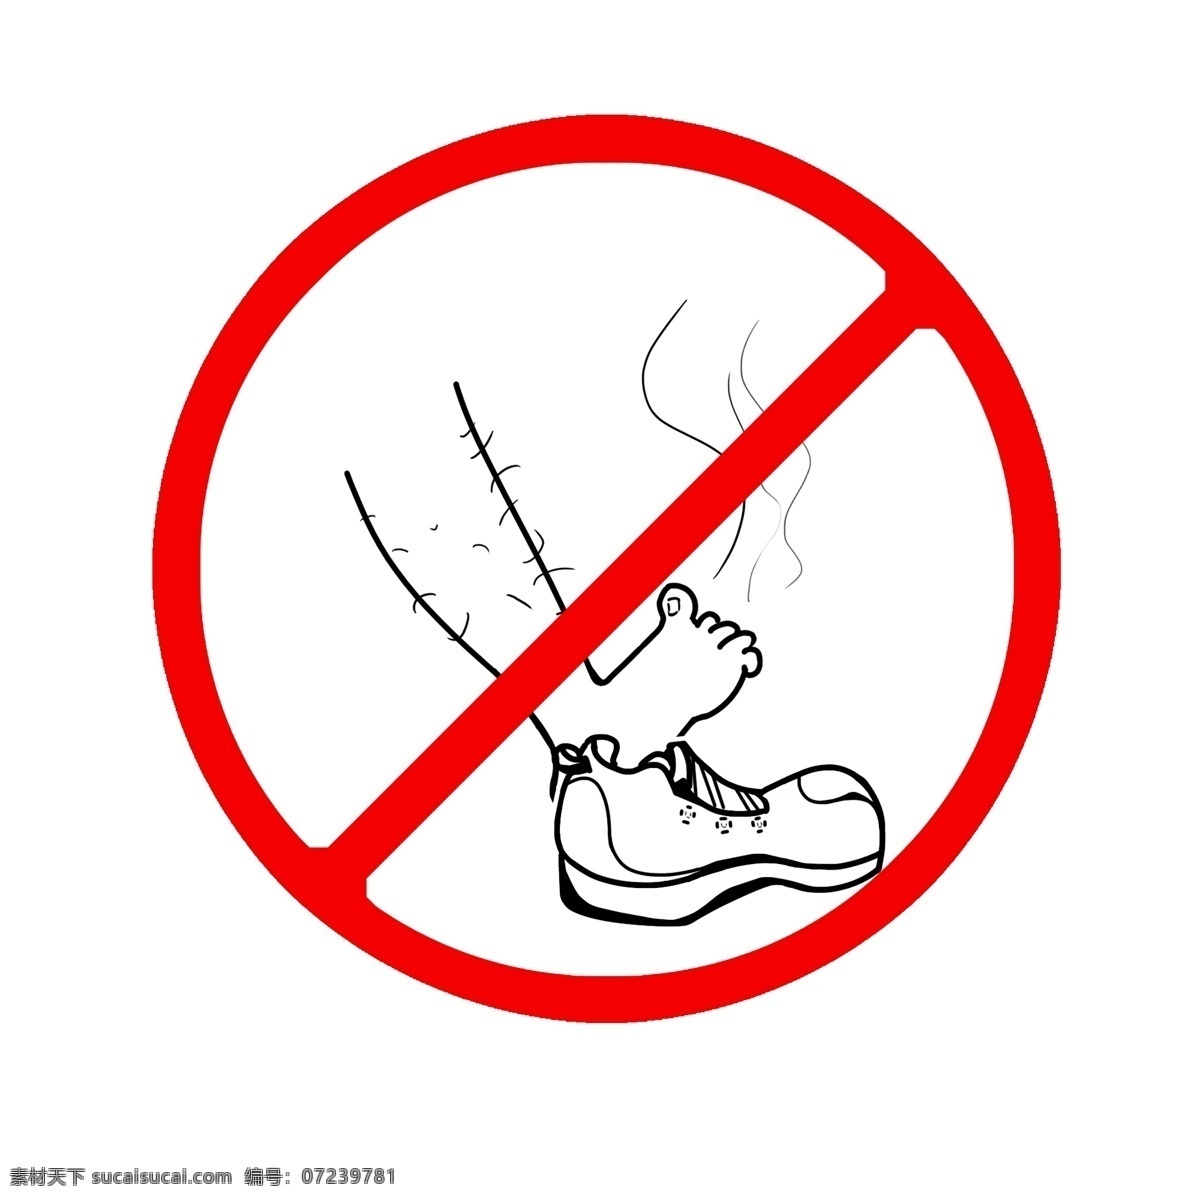 公共 场合 禁止 拖鞋 插图 禁止标识 禁止标志 禁止进入 安全防范 谢谢合作 光着的脚 白色的鞋 公共场合禁止